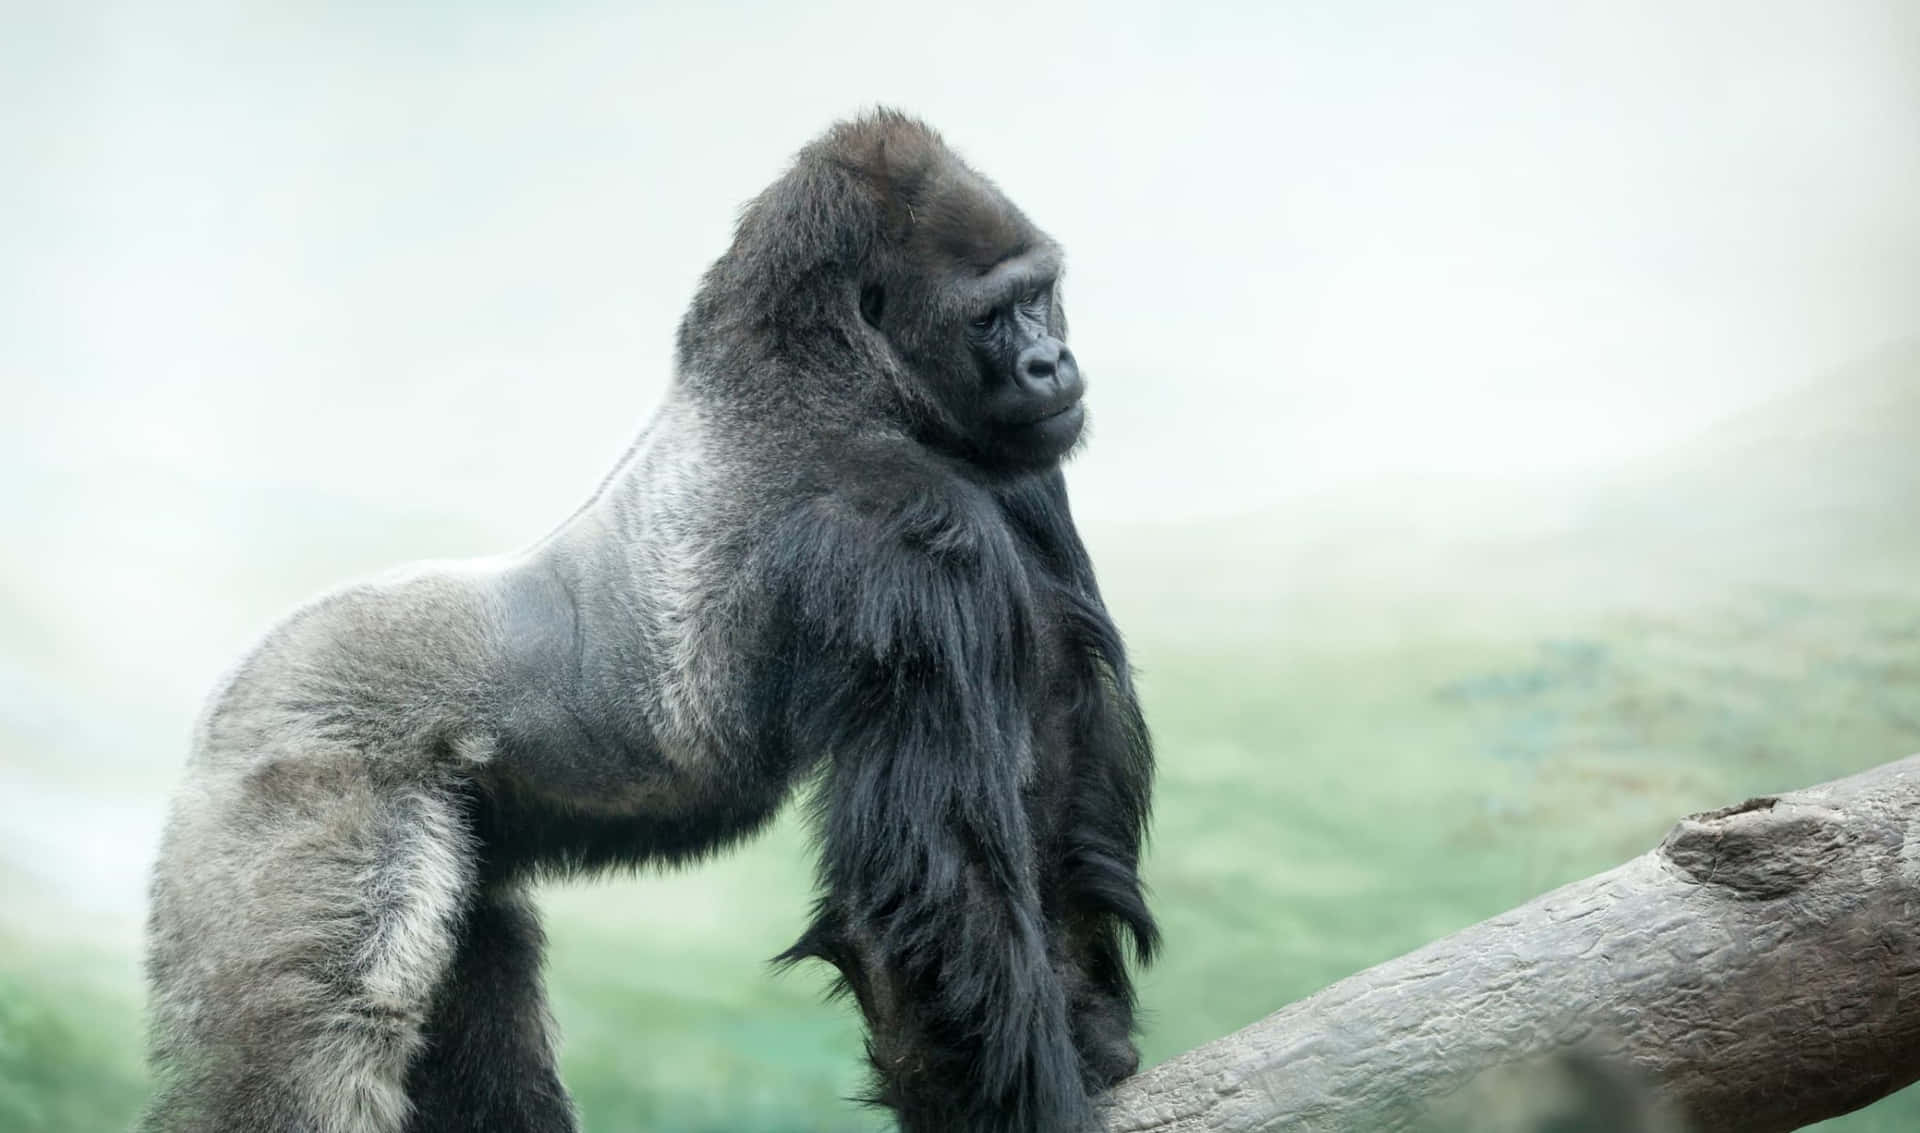 A Closeup of a Gorilla